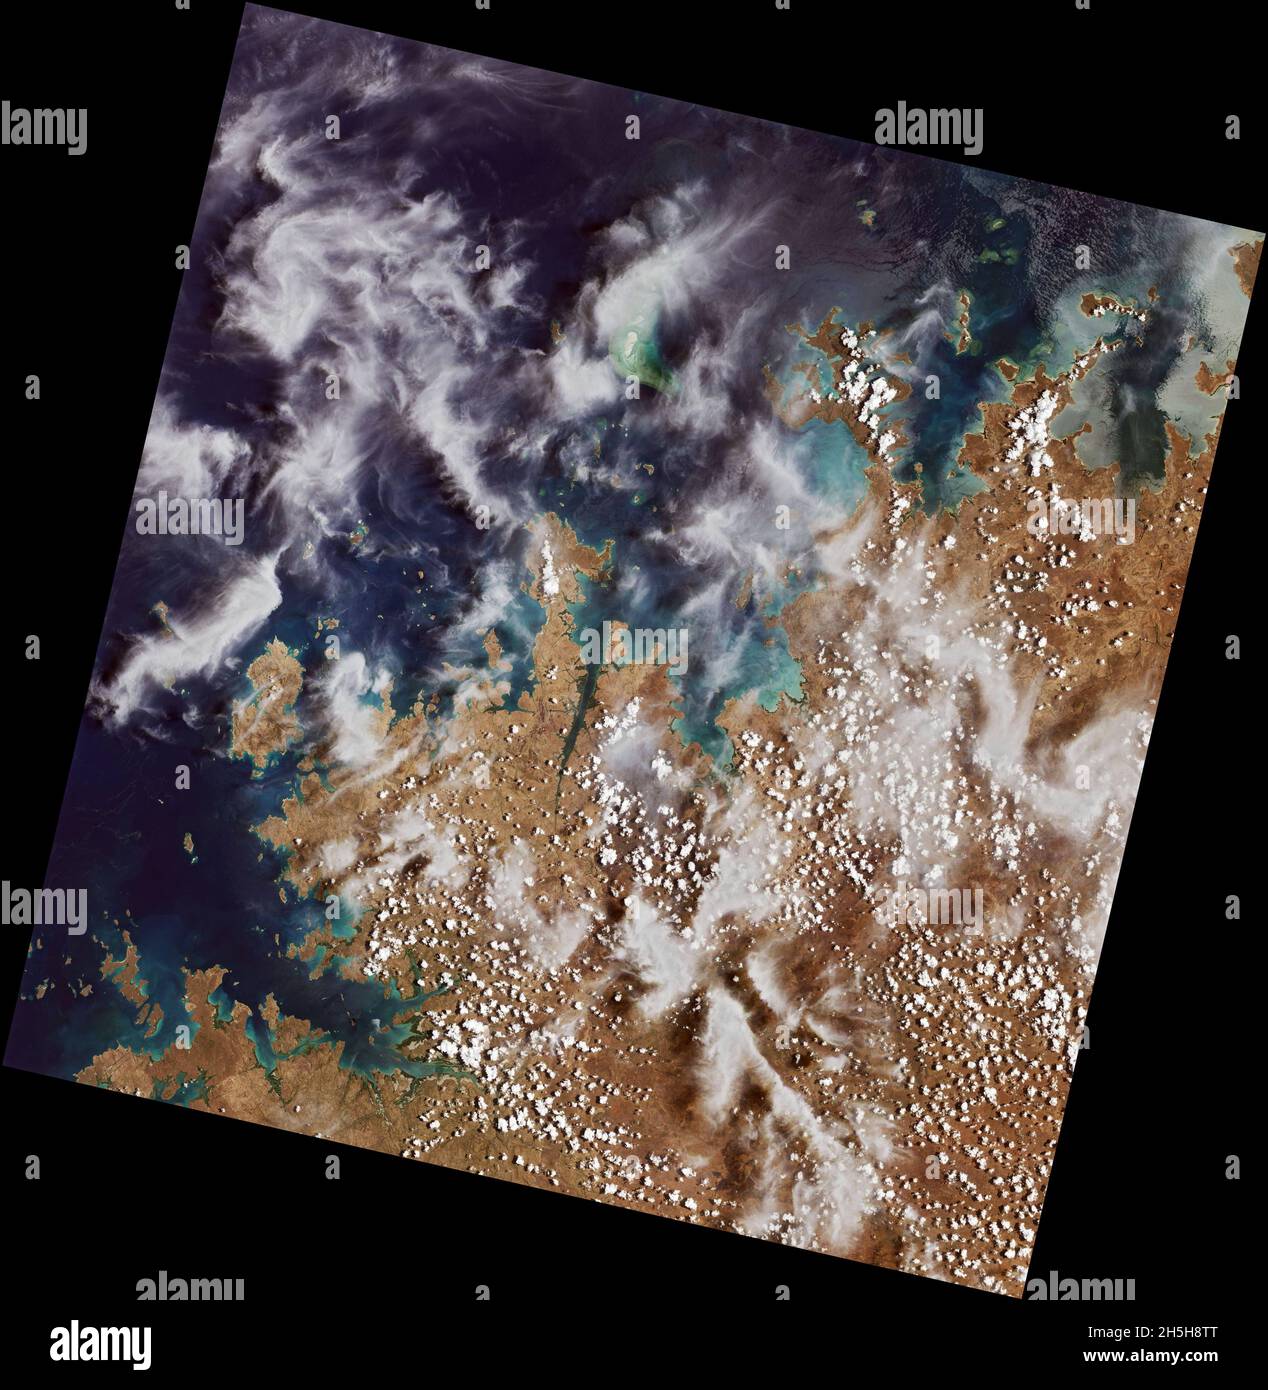 Platz. Oktober 2021. Landsat 9, eine gemeinsame Mission der NASA und des U.S. Geological Survey (USGS), die im September 2021 gestartet wurde, hat seine ersten Bilder der Erde gesammelt. Die „First-Light“-Bilder, die am 31. Oktober aufgenommen wurden, bieten eine Vorschau darauf, wie die Mission den Menschen helfen wird, lebenswichtige natürliche Ressourcen zu verwalten und die Auswirkungen des Klimawandels zu verstehen. Der neue Satellit erweitert einen beispiellosen Datensatz, der fast 50 Jahre Weltraumbeobachtung der Erde umfasst.Quelle: NASA Earth/ZUMA Press Wire Service/ZUMAPRESS.com/Alamy Live News Stockfoto